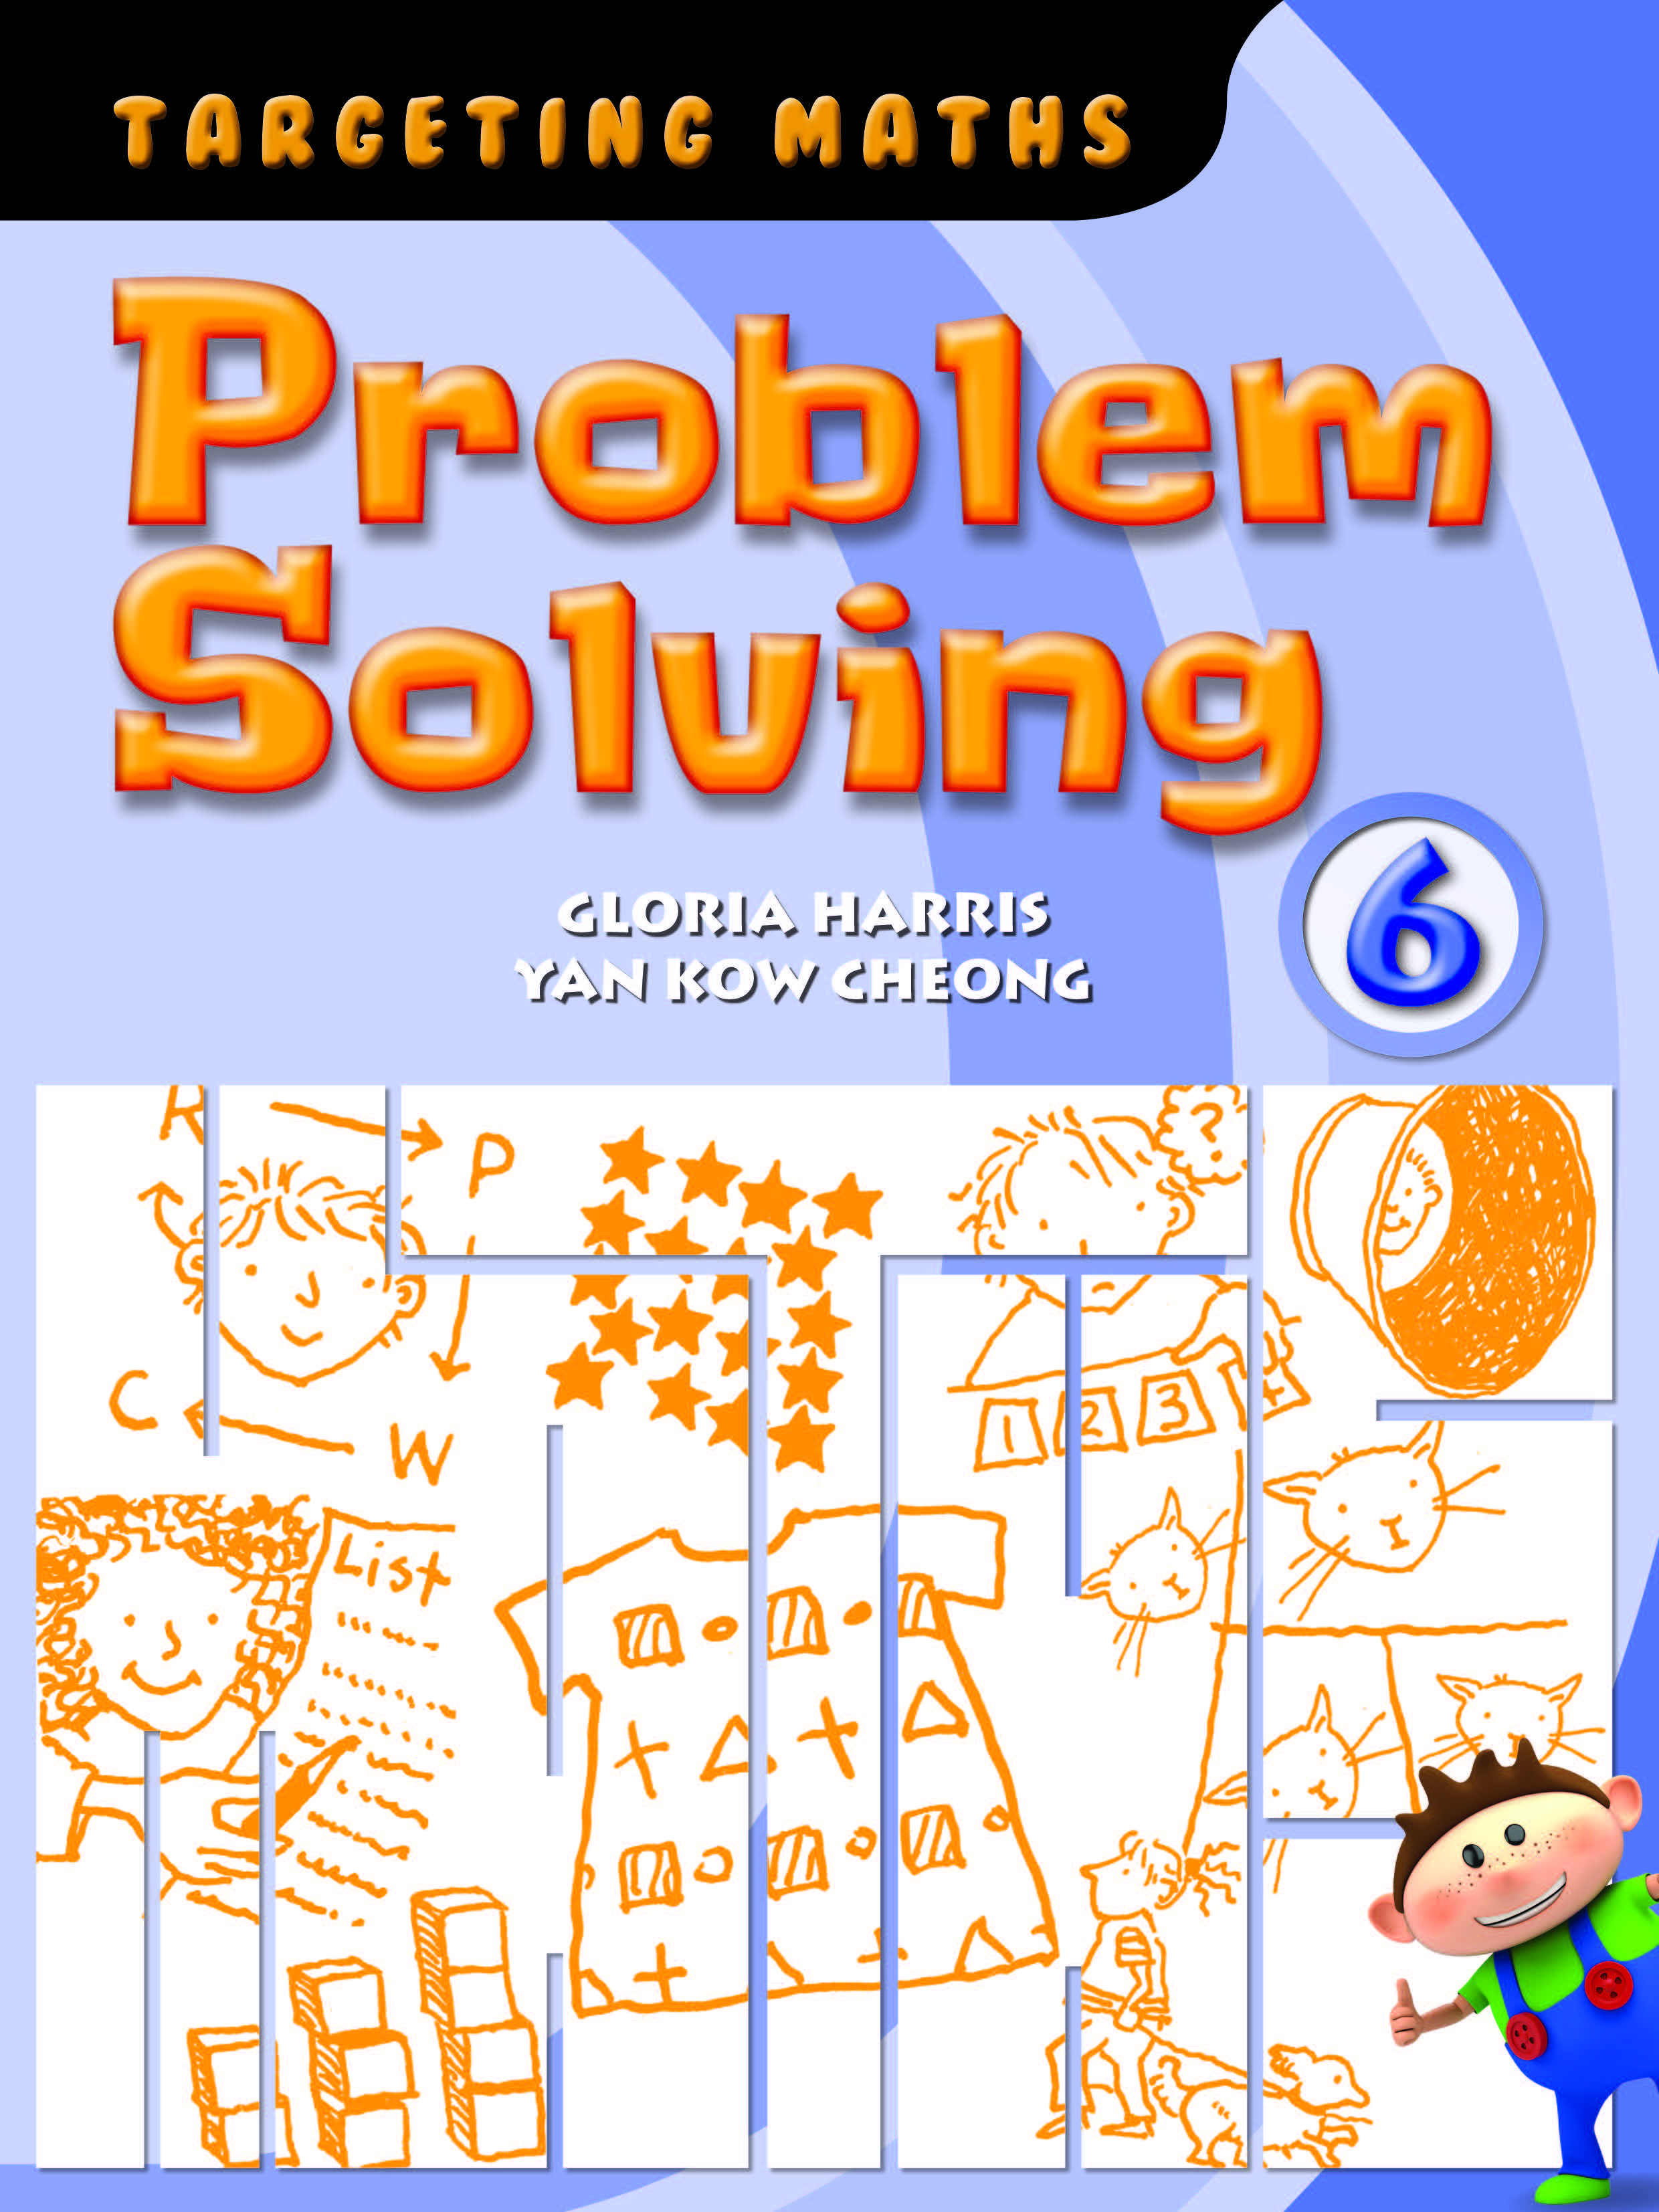 targeting maths problem solving pdf